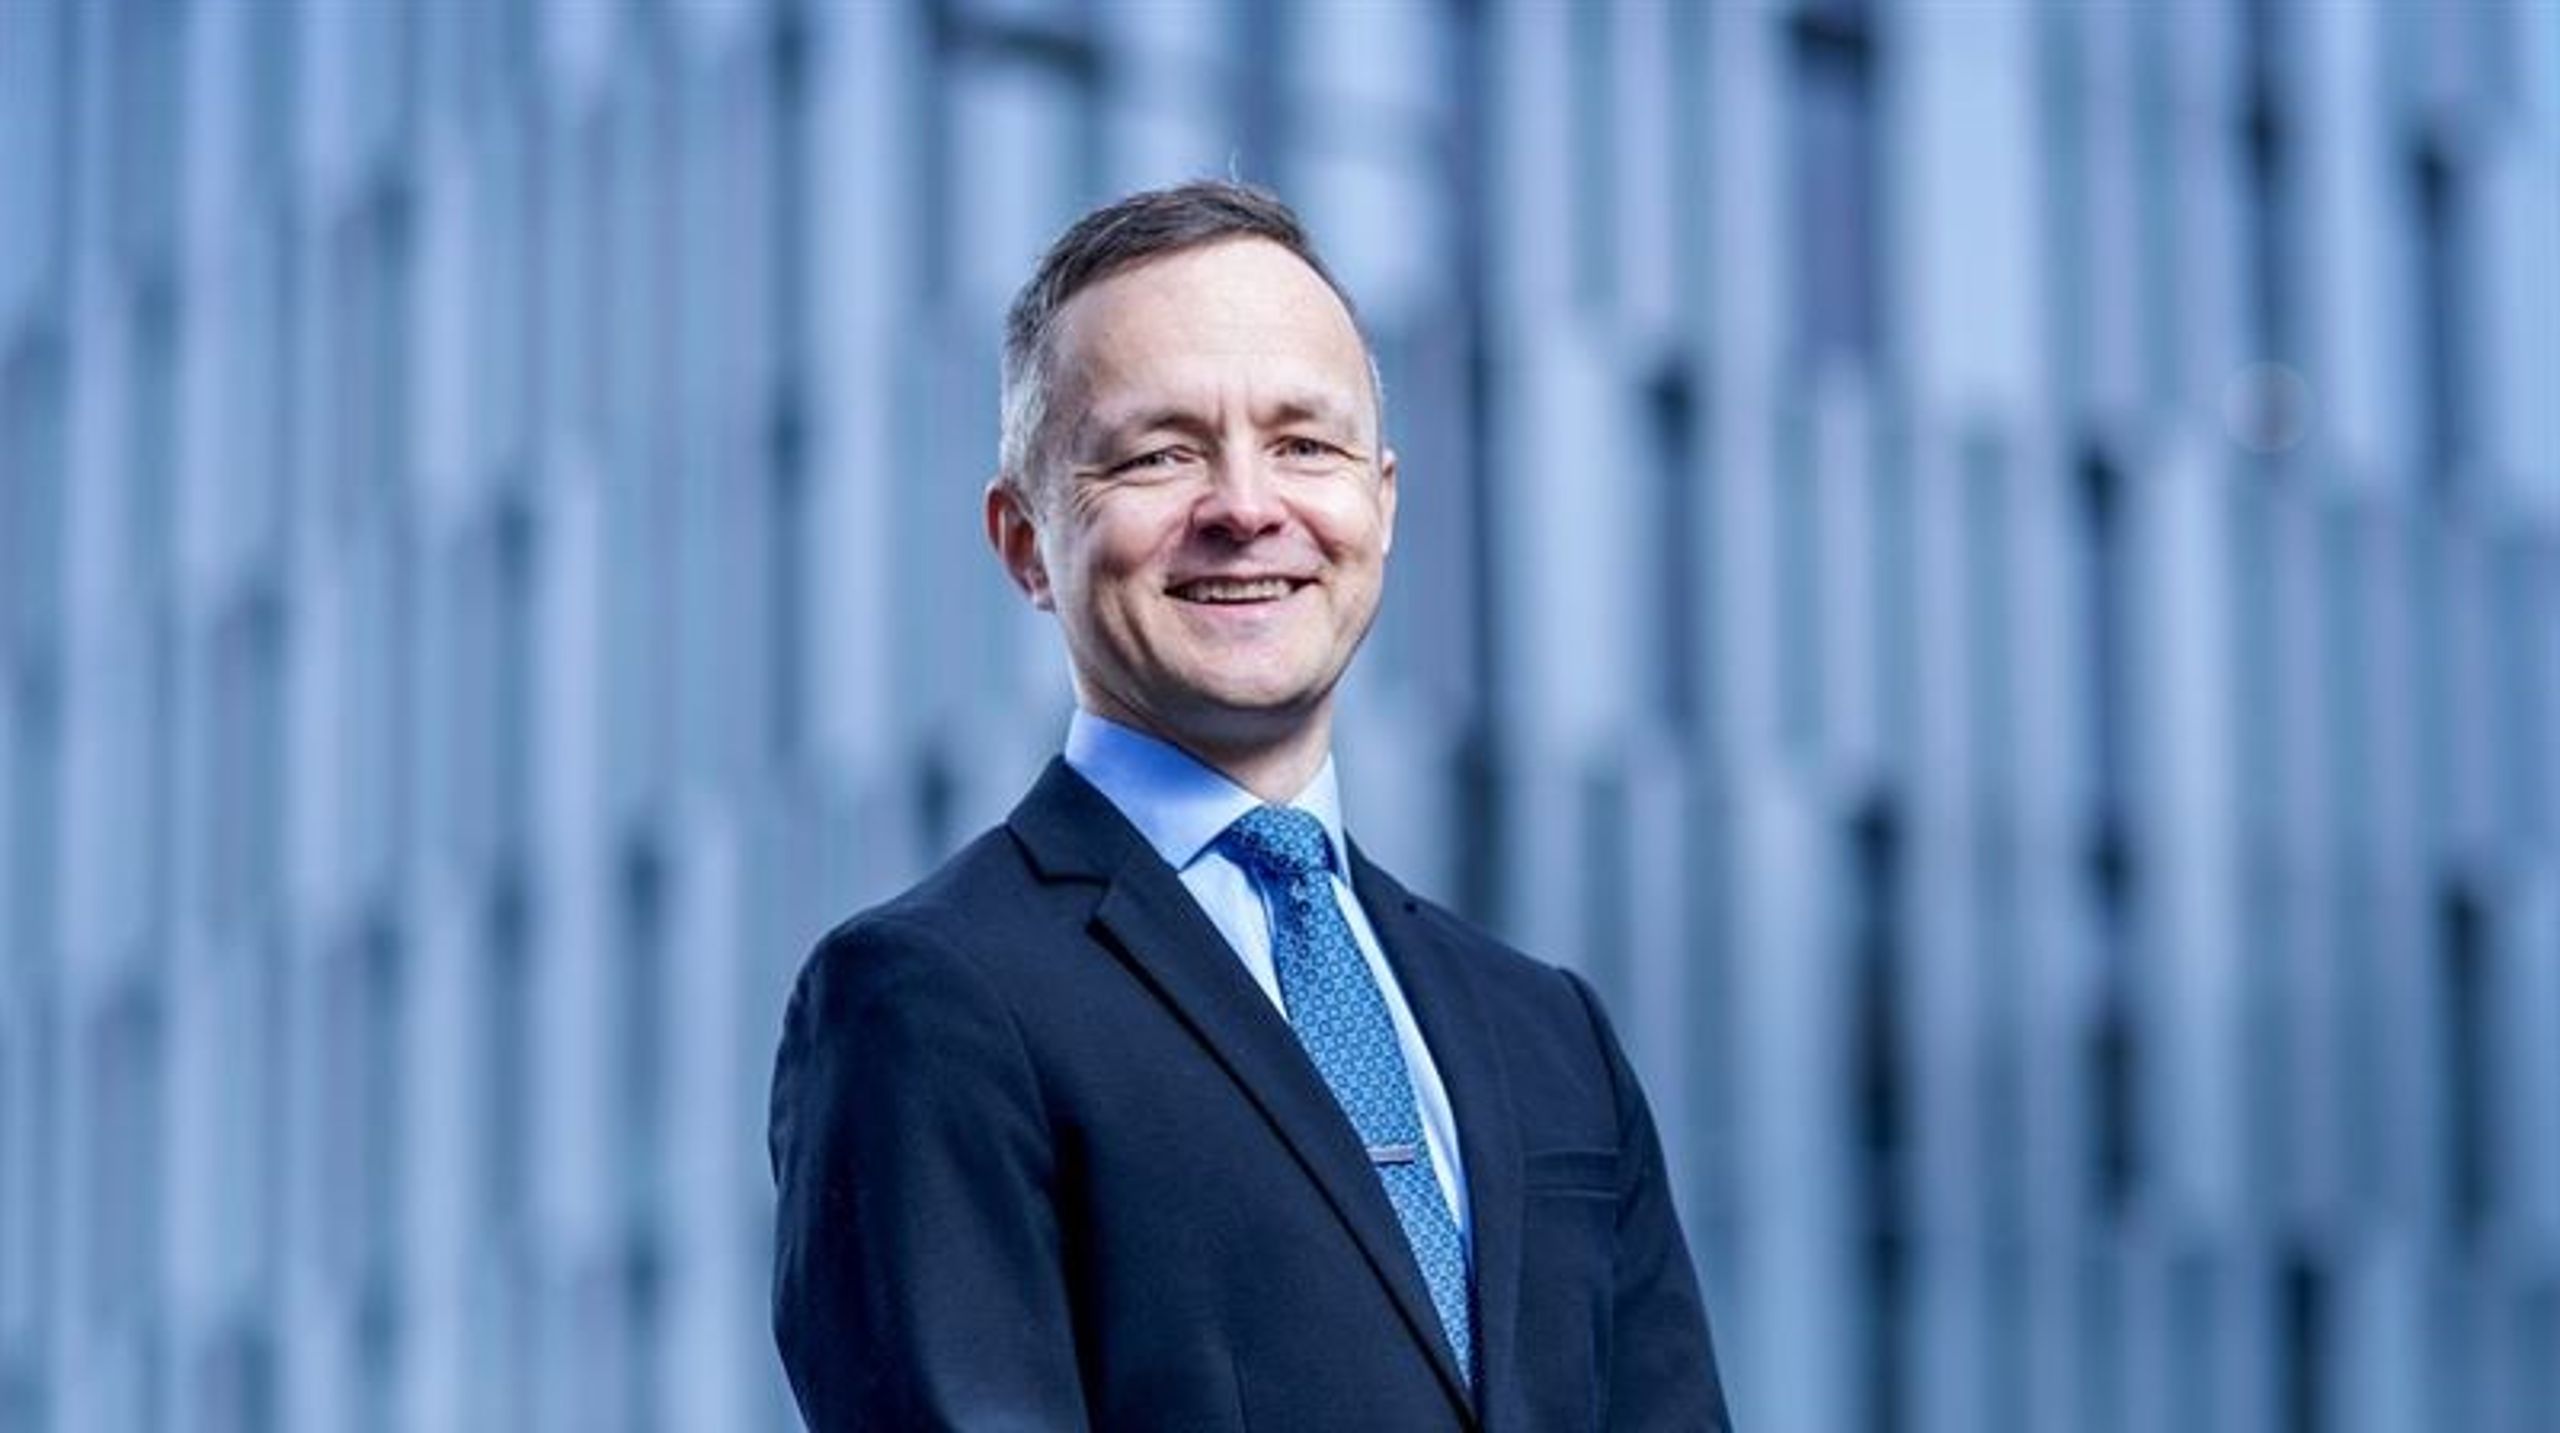 Klima- og økonomijournalist i NRK, Hallvard Norum, tiltrer sin nye stilling i Aker Solutions fra midten av mars 2023.